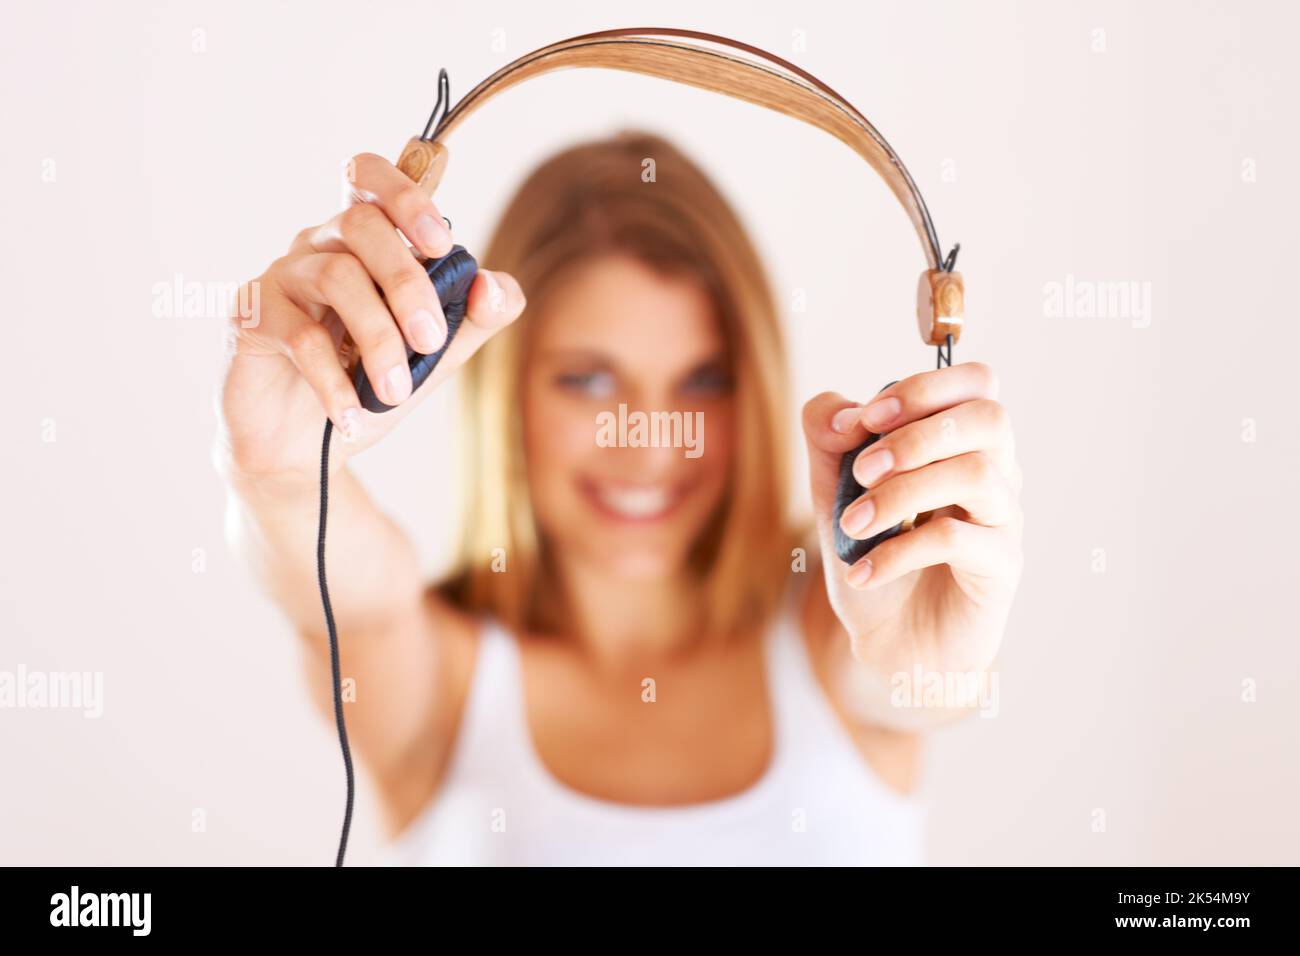 Du musst dieses Lied hören. Eine junge Frau hält Ihnen ihre Kopfhörer vor. Stockfoto